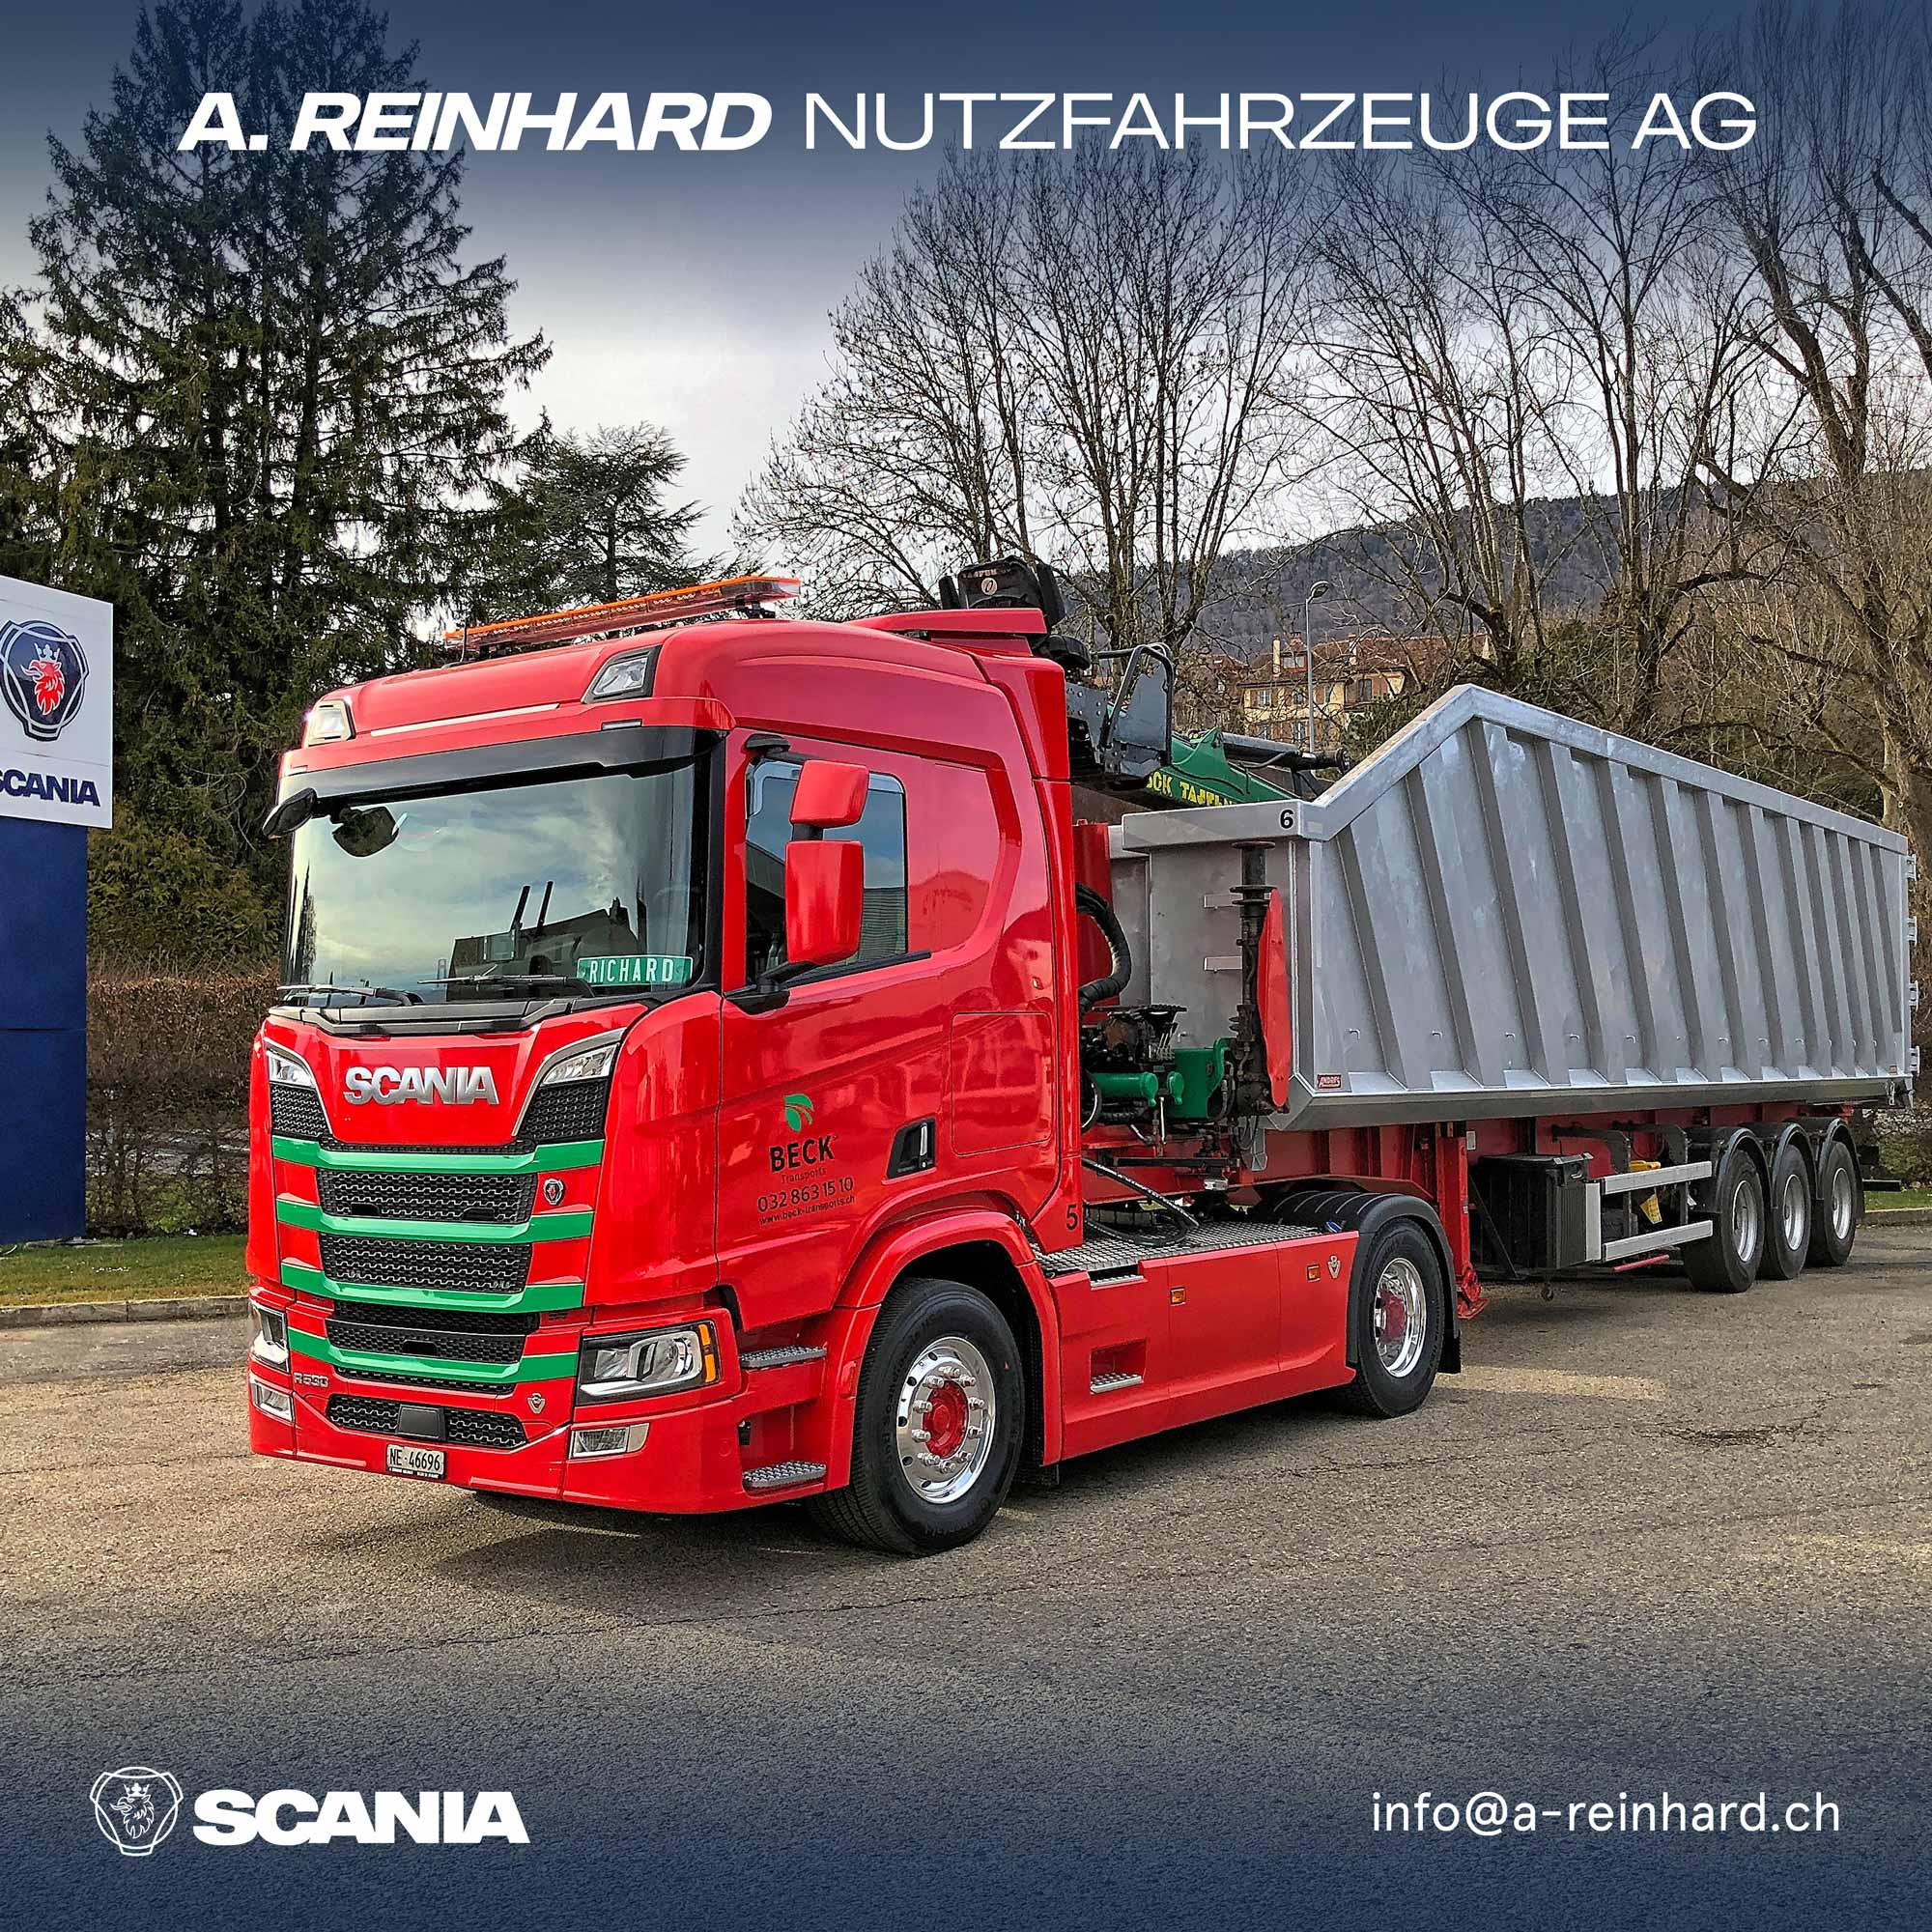 Scania brachte eine Sattelzugmaschine auf den Markt und die Tasche